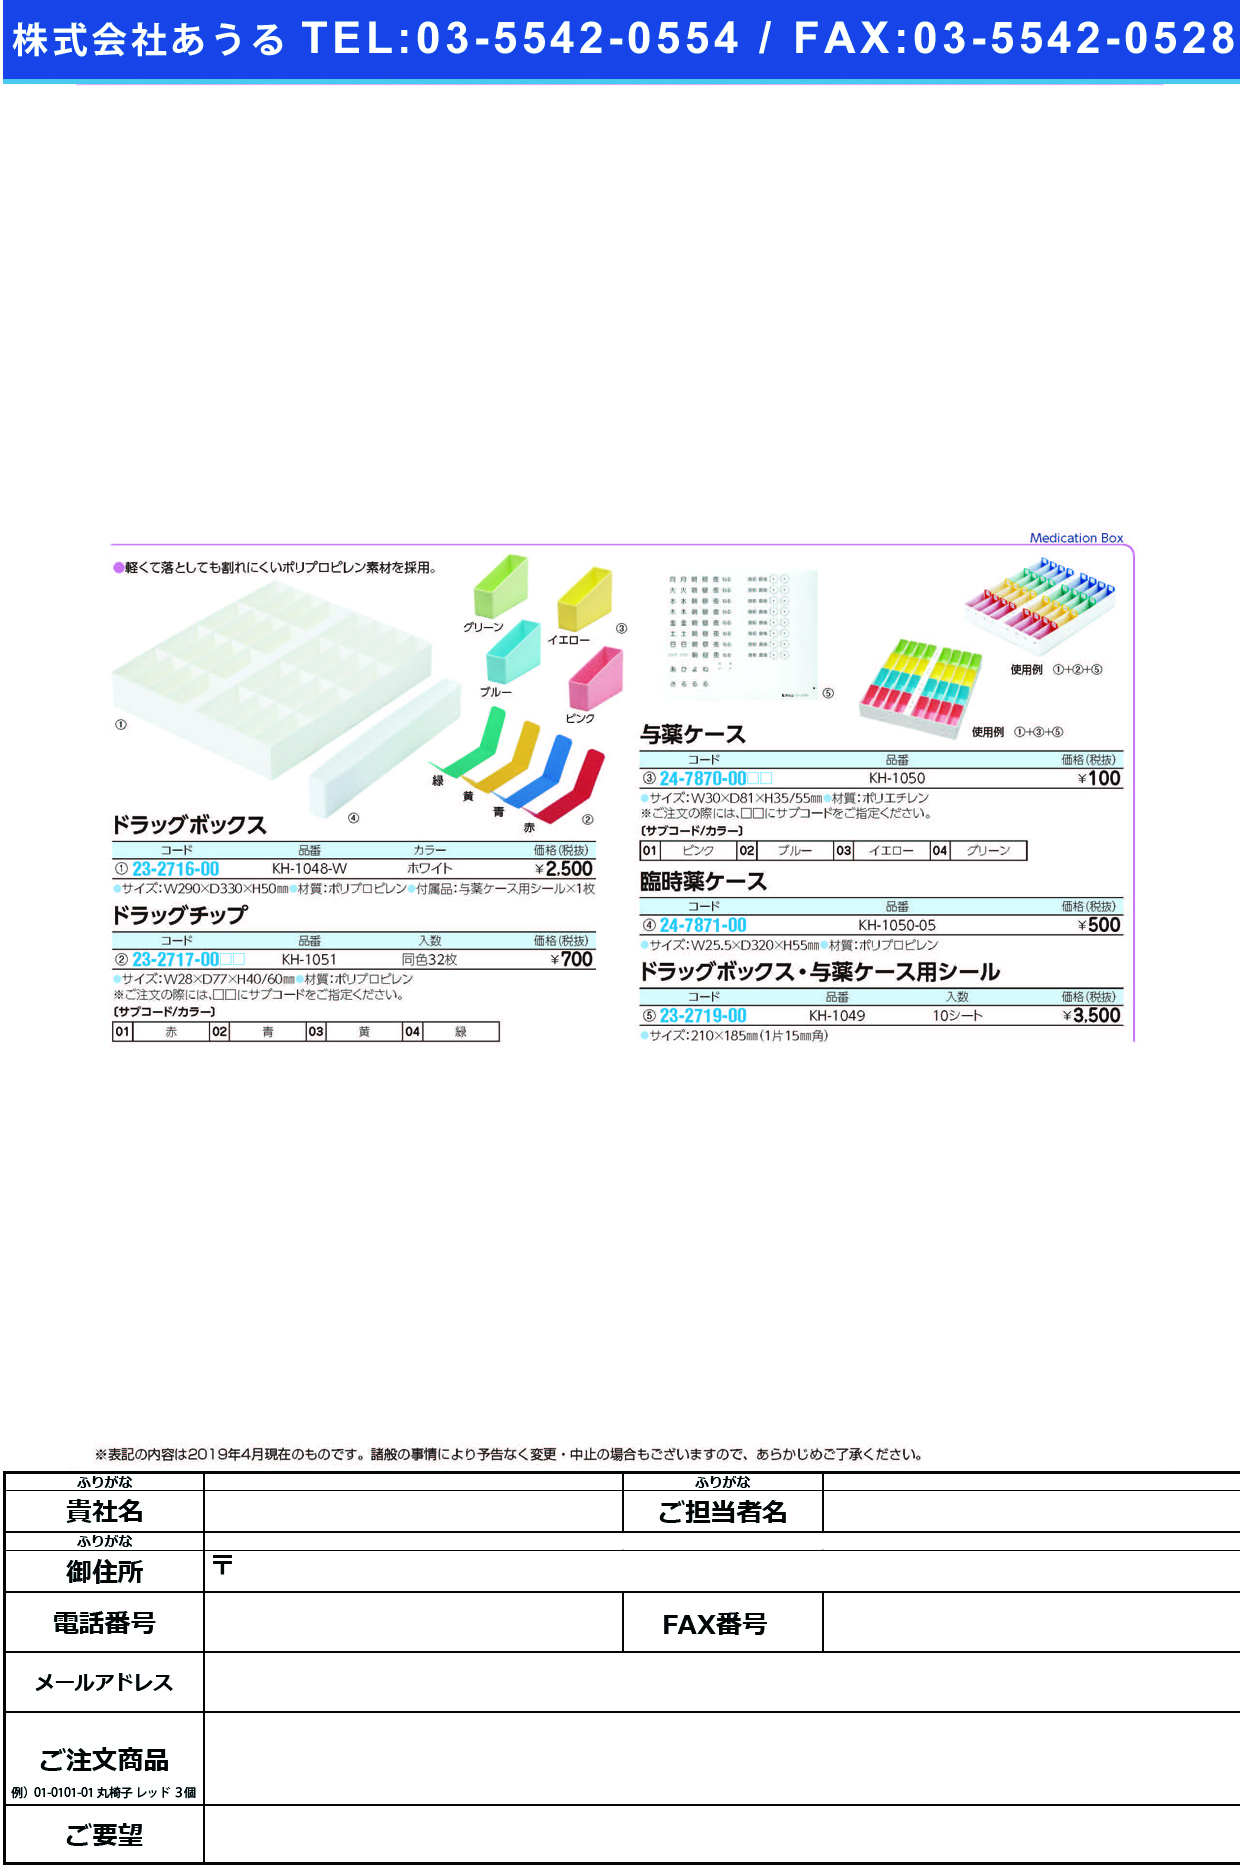 (24-7870-00)与薬ケースKH-1050 ﾖﾔｸｹｰｽ ピンク(ケルン)【1個単位】【2019年カタログ商品】